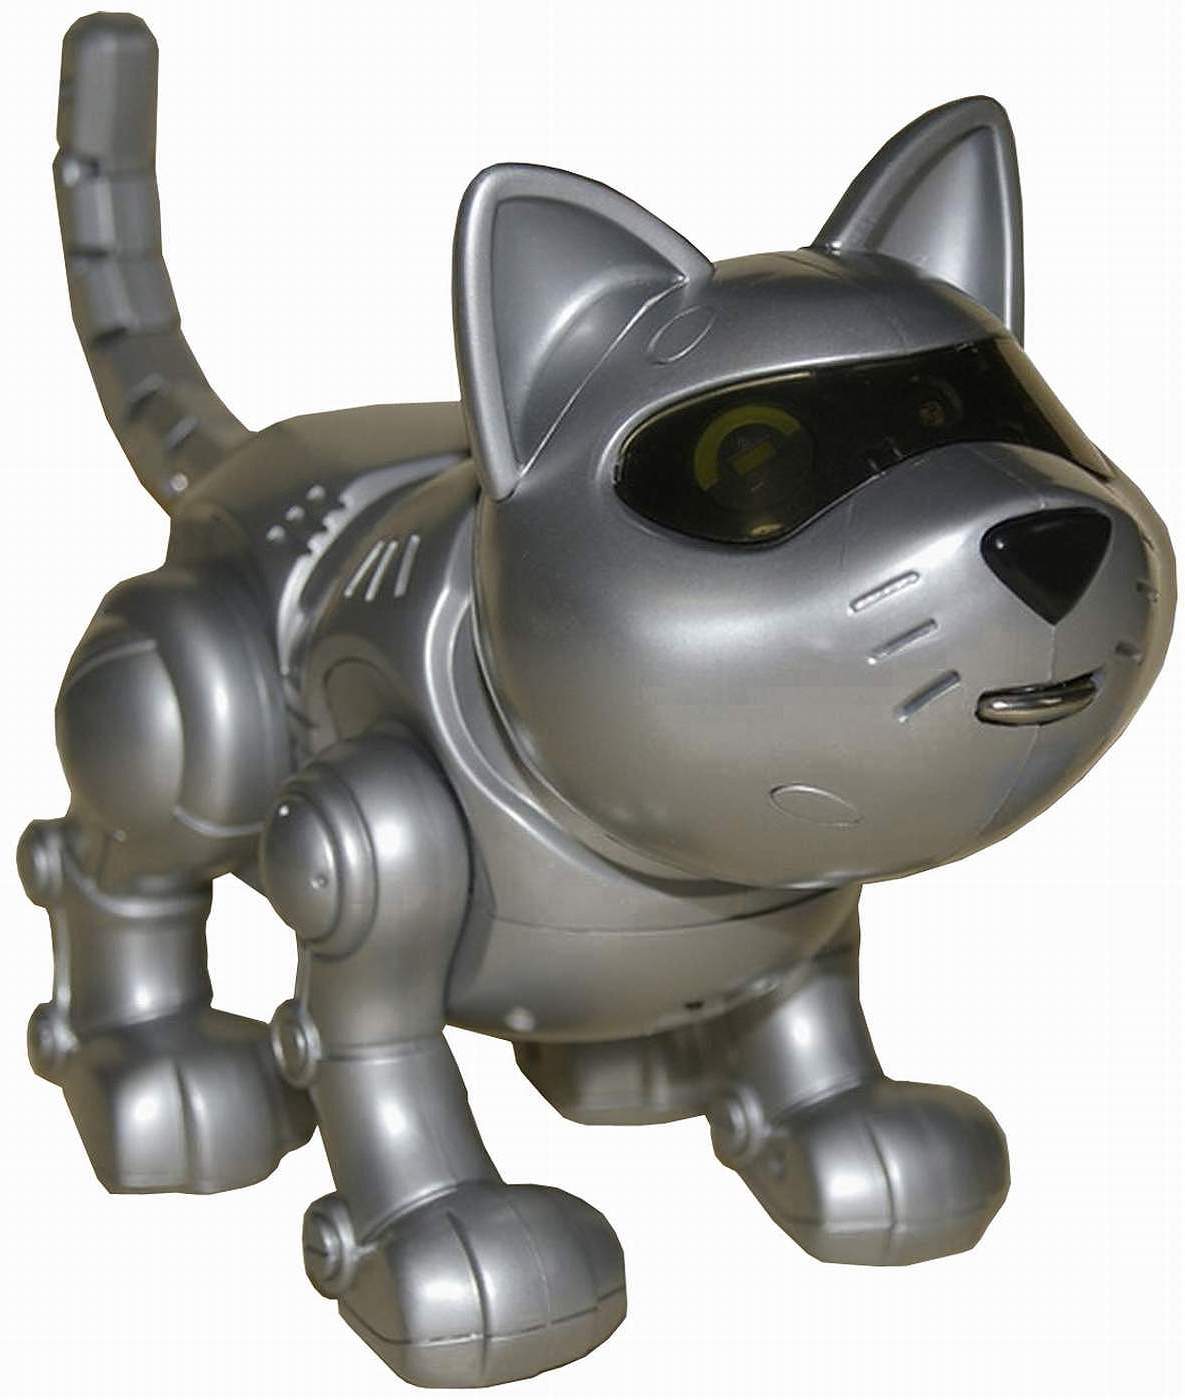 robotic toy cat